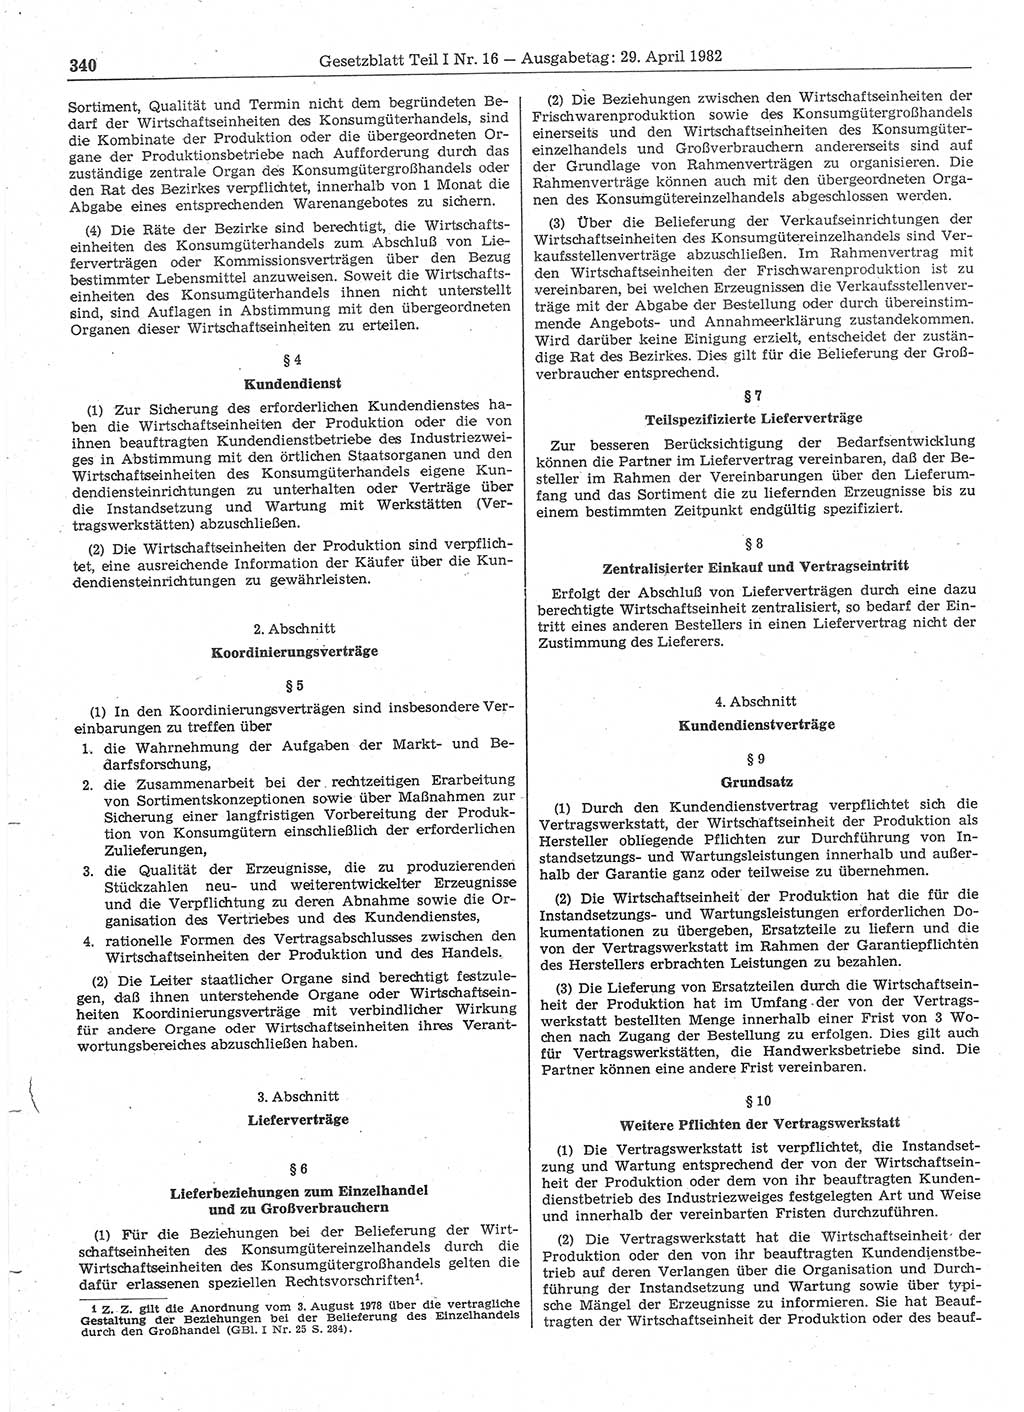 Gesetzblatt (GBl.) der Deutschen Demokratischen Republik (DDR) Teil Ⅰ 1982, Seite 340 (GBl. DDR Ⅰ 1982, S. 340)